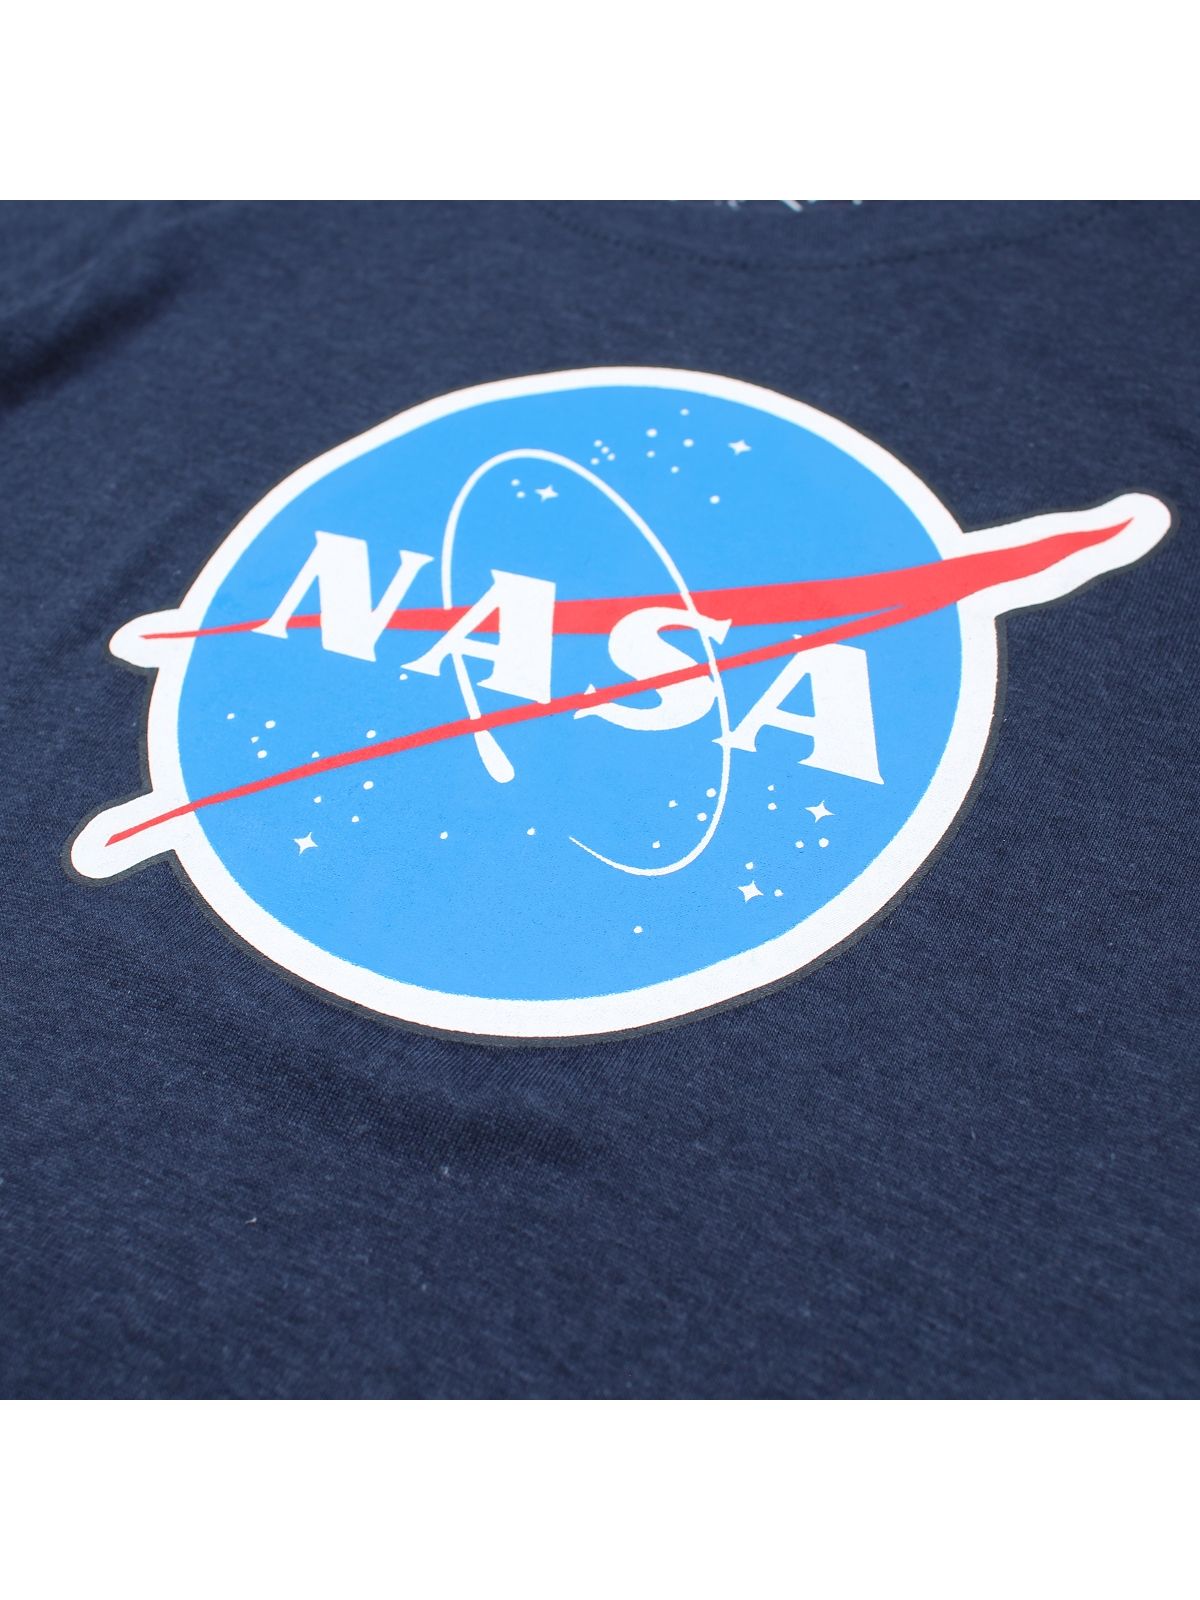 NASA kinder T-shirt